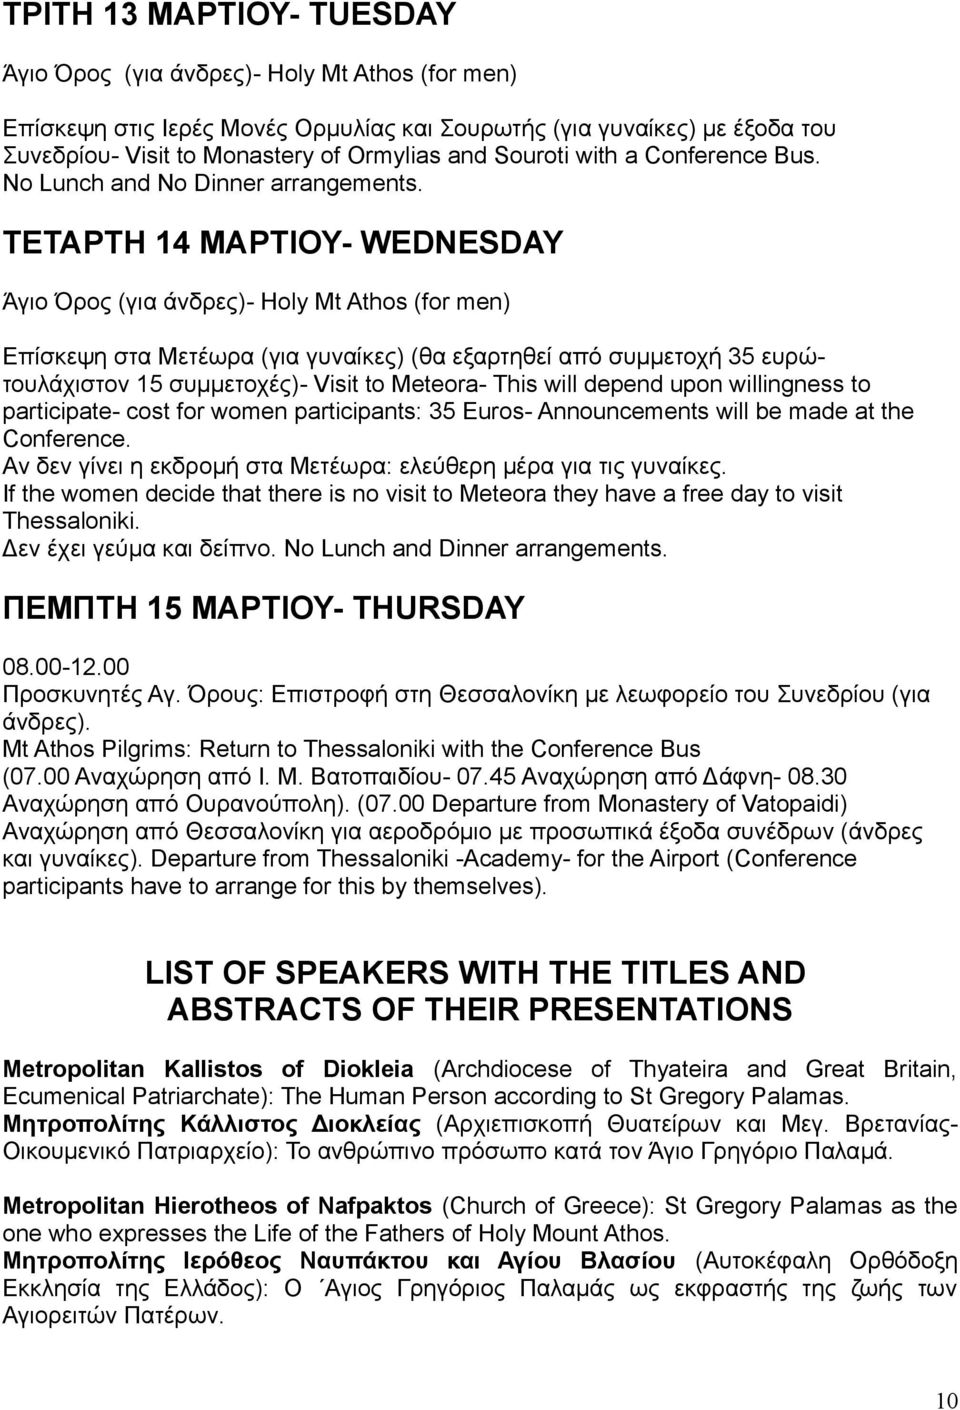 ΤΕΤΑΡΤΗ 14 ΜΑΡΤΙΟΥ- WEDNESDAY Άγιο Όρος (για άνδρες)- Holy Mt Athos (for men) Επίσκεψη στα Μετέωρα (για γυναίκες) (θα εξαρτηθεί από συμμετοχή 35 ευρώτουλάχιστον 15 συμμετοχές)- Visit to Meteora- This